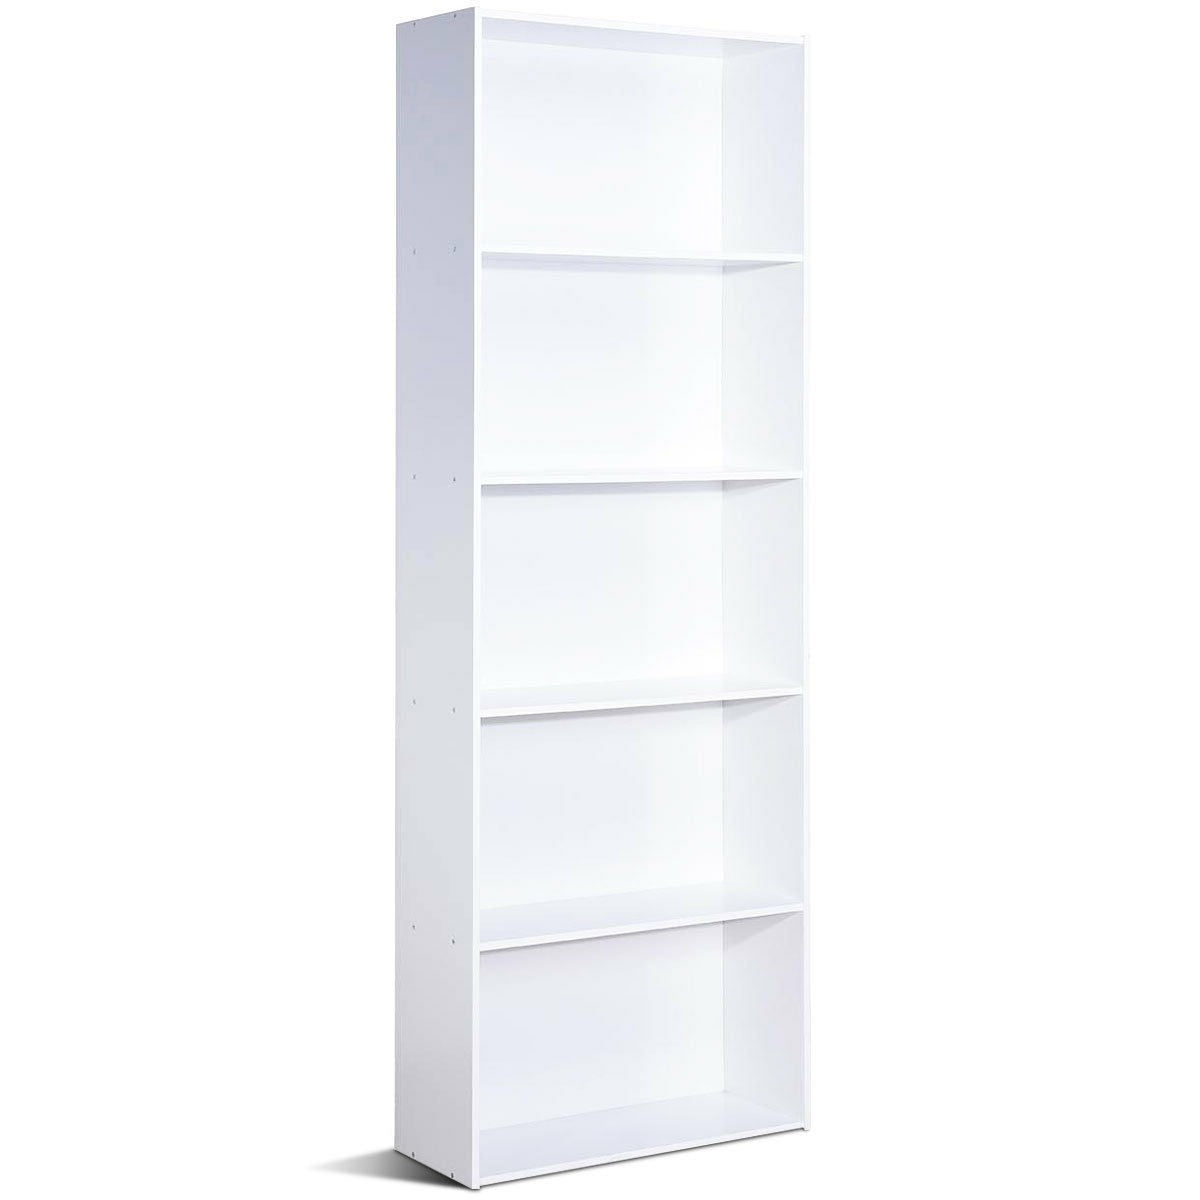 Modern 5-Tier Bookcase Storage Shelf in White Wood Finish